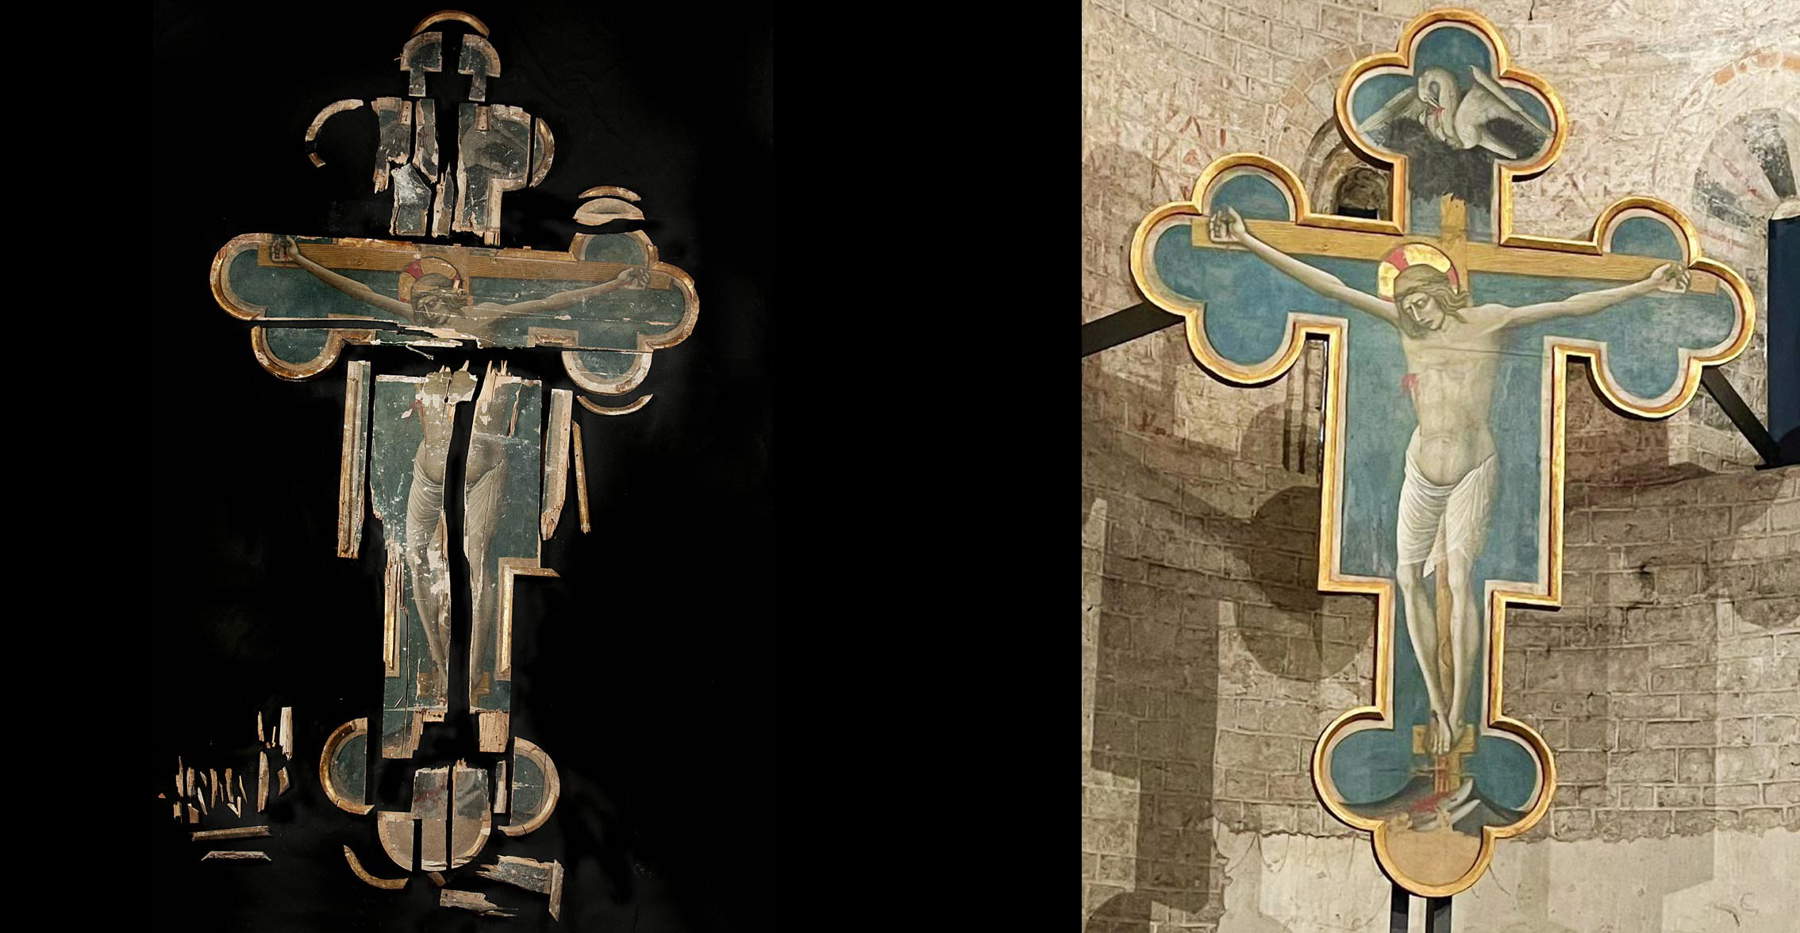 Spoleto, restaurata e di nuovo visibile la Croce del Pellicano, distrutta dal sisma del 2016